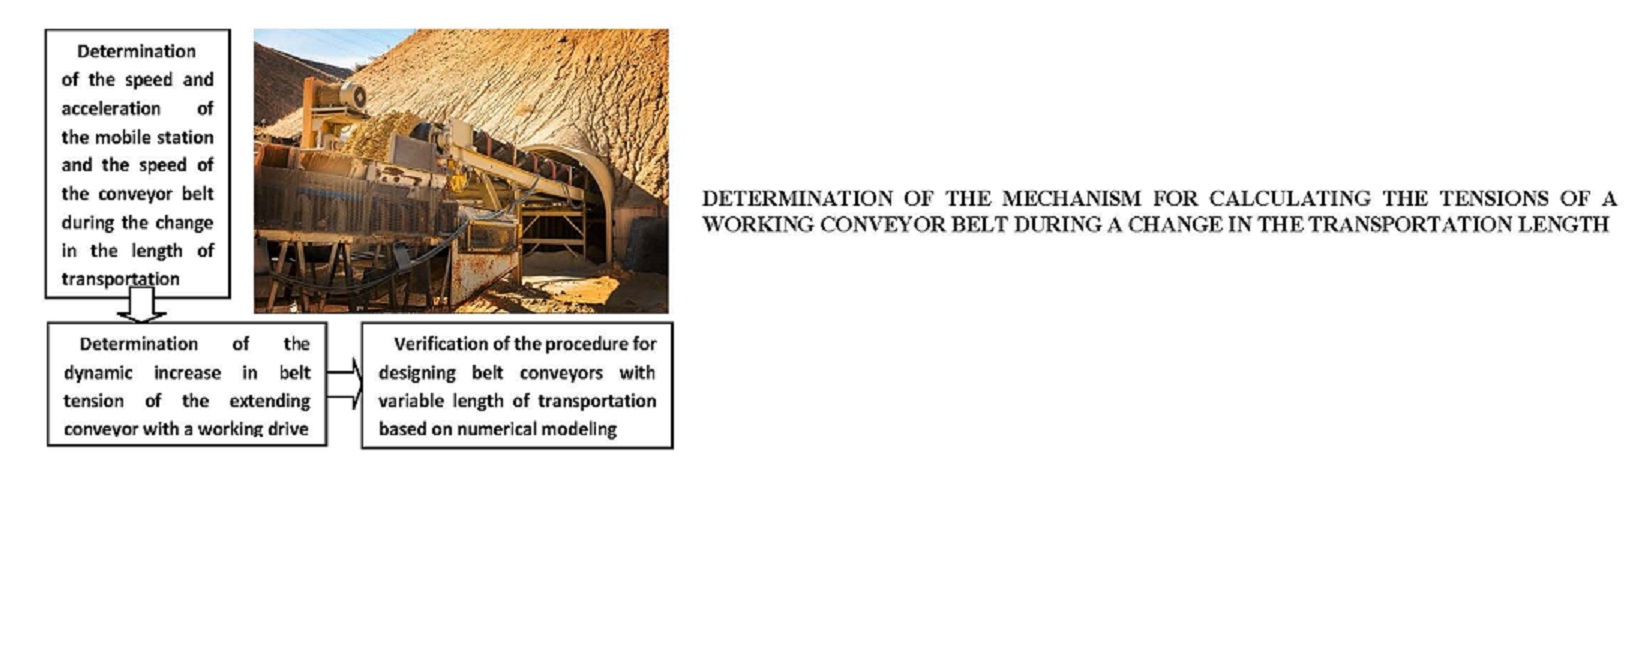 Визначення механізму розрахунку натягнень стрічки конвеєра, працюючого під час зміни довжини транспортування